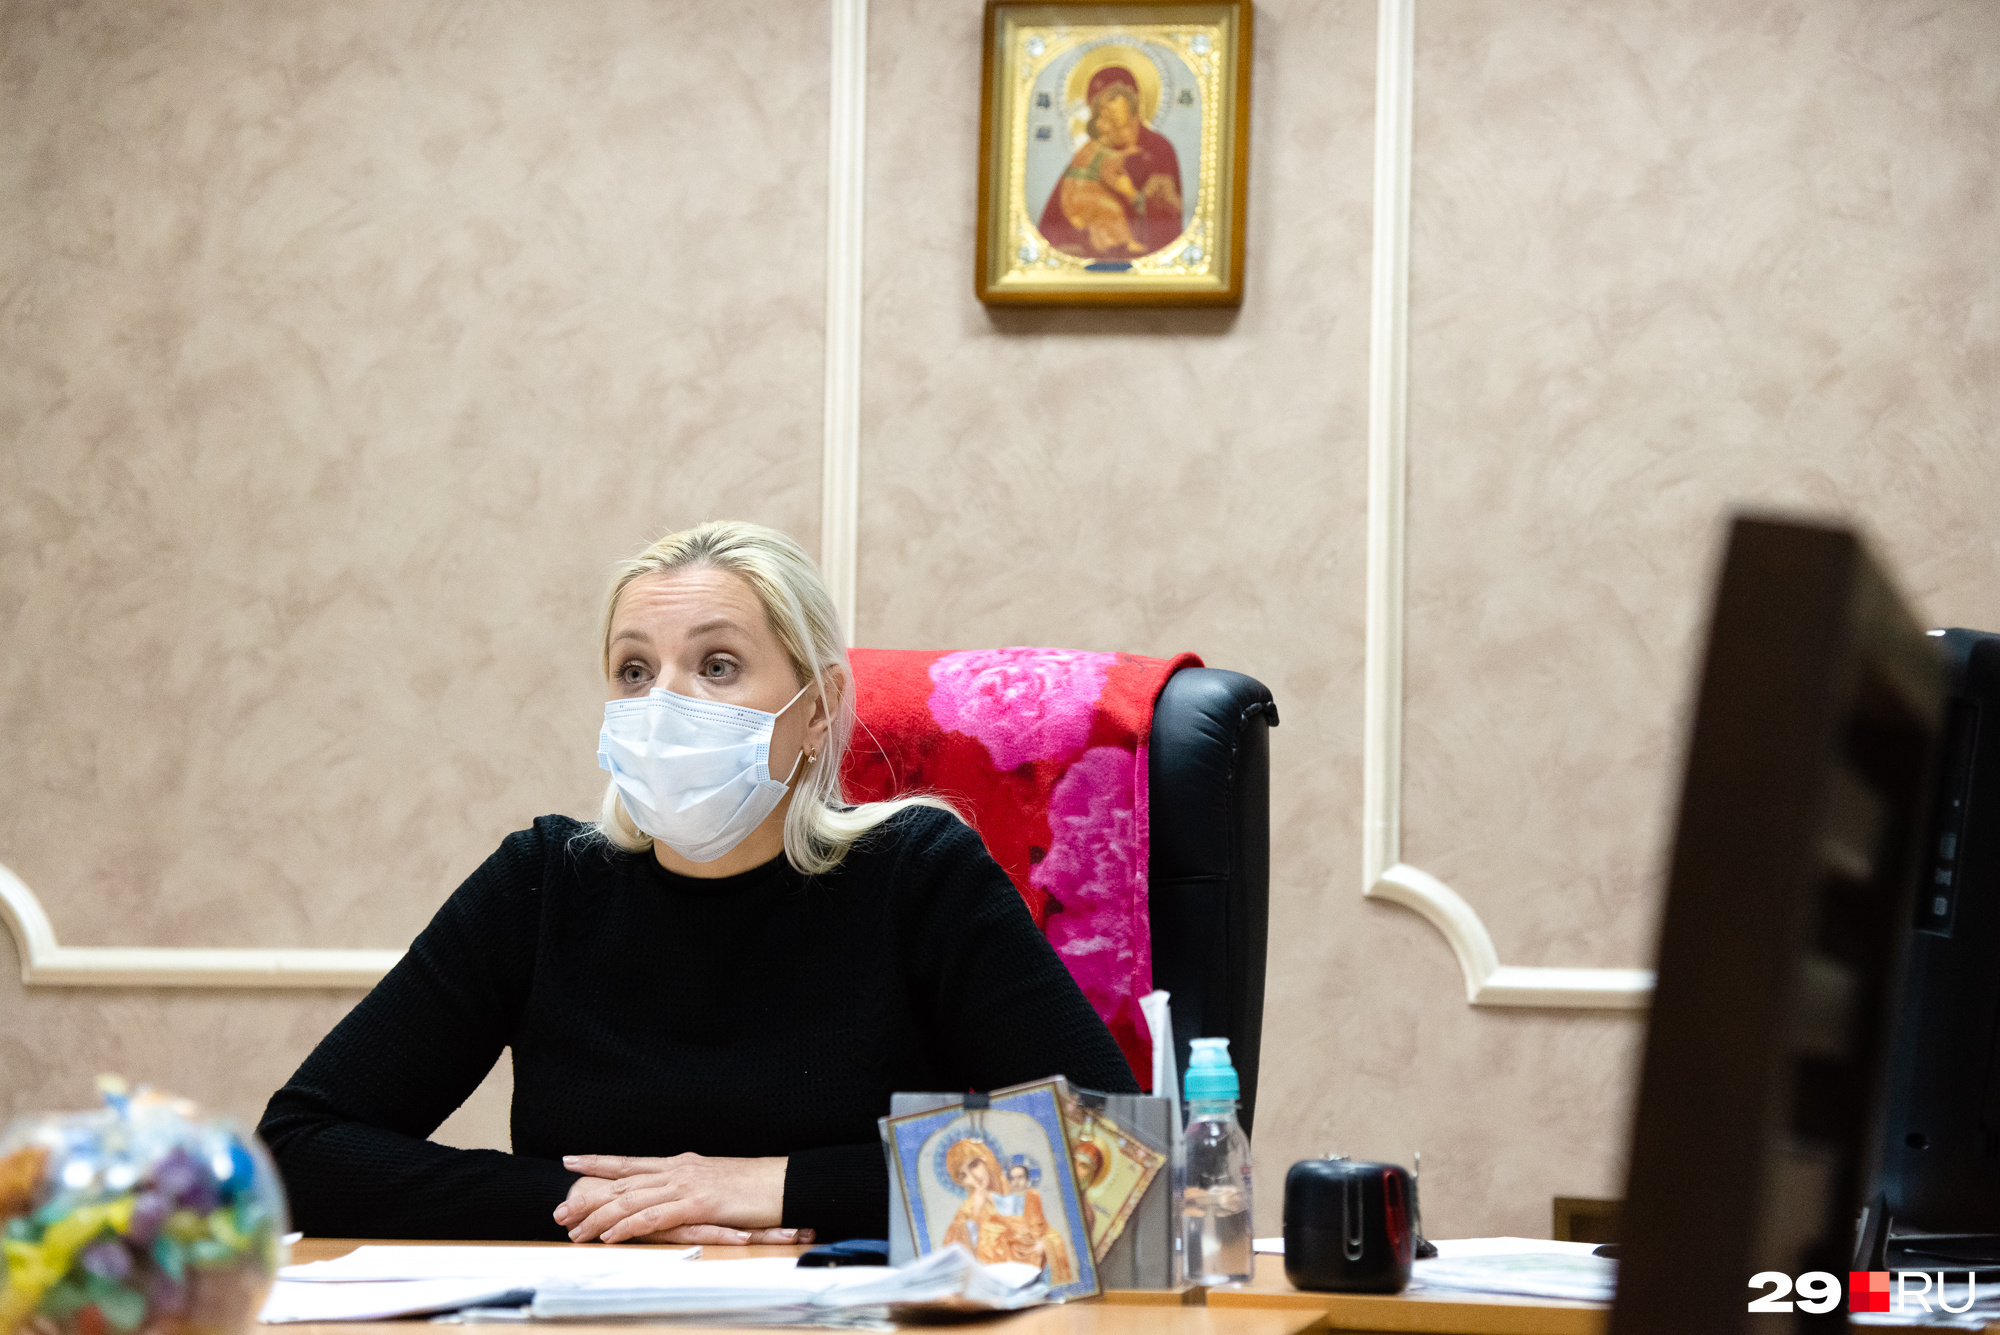 Наталья Никифорова говорит, что они могут договориться с проживающими в интернате — нужно только попросить заранее